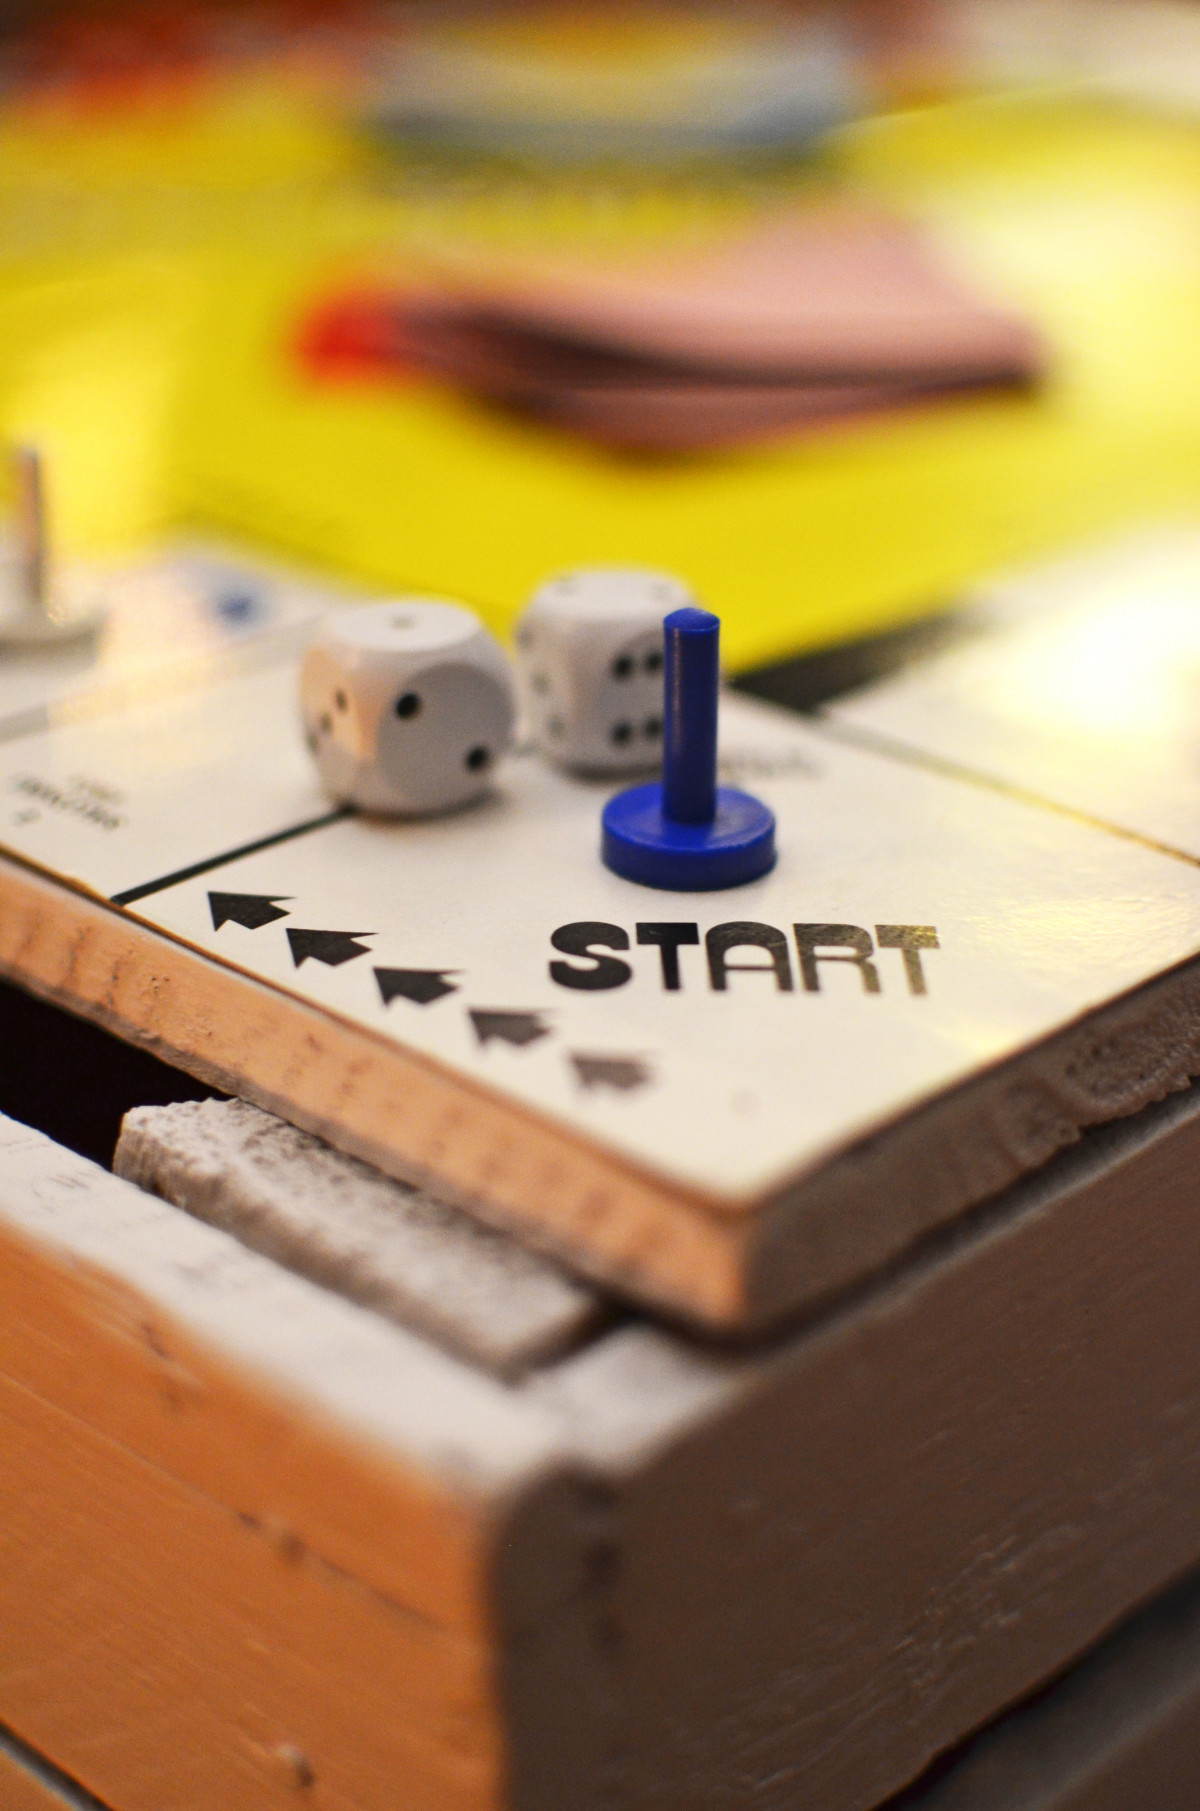 Imagen que muestra la casilla de salida de un juego con la palabra Start.